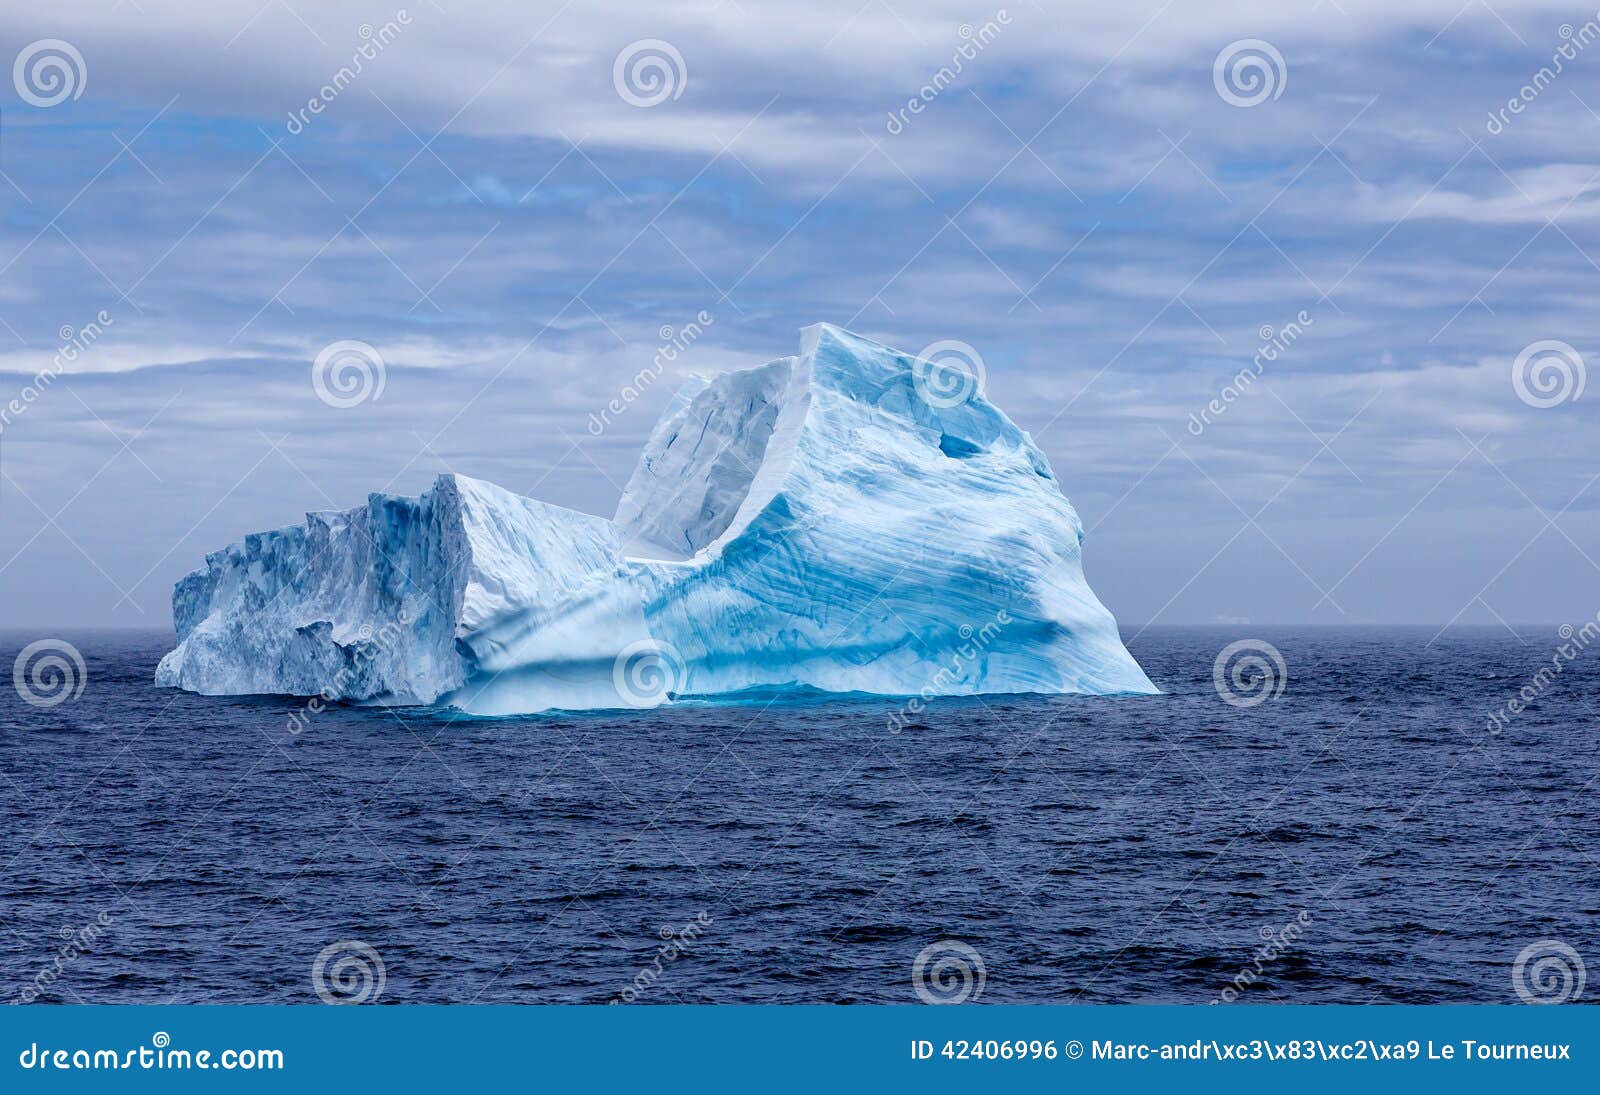 Isbergsphynx i Antarctica-2. Ett enormt isberg på drift med en form som påminner sfinxen av Egypten som tas i Treenighethalvön, december 27 2011